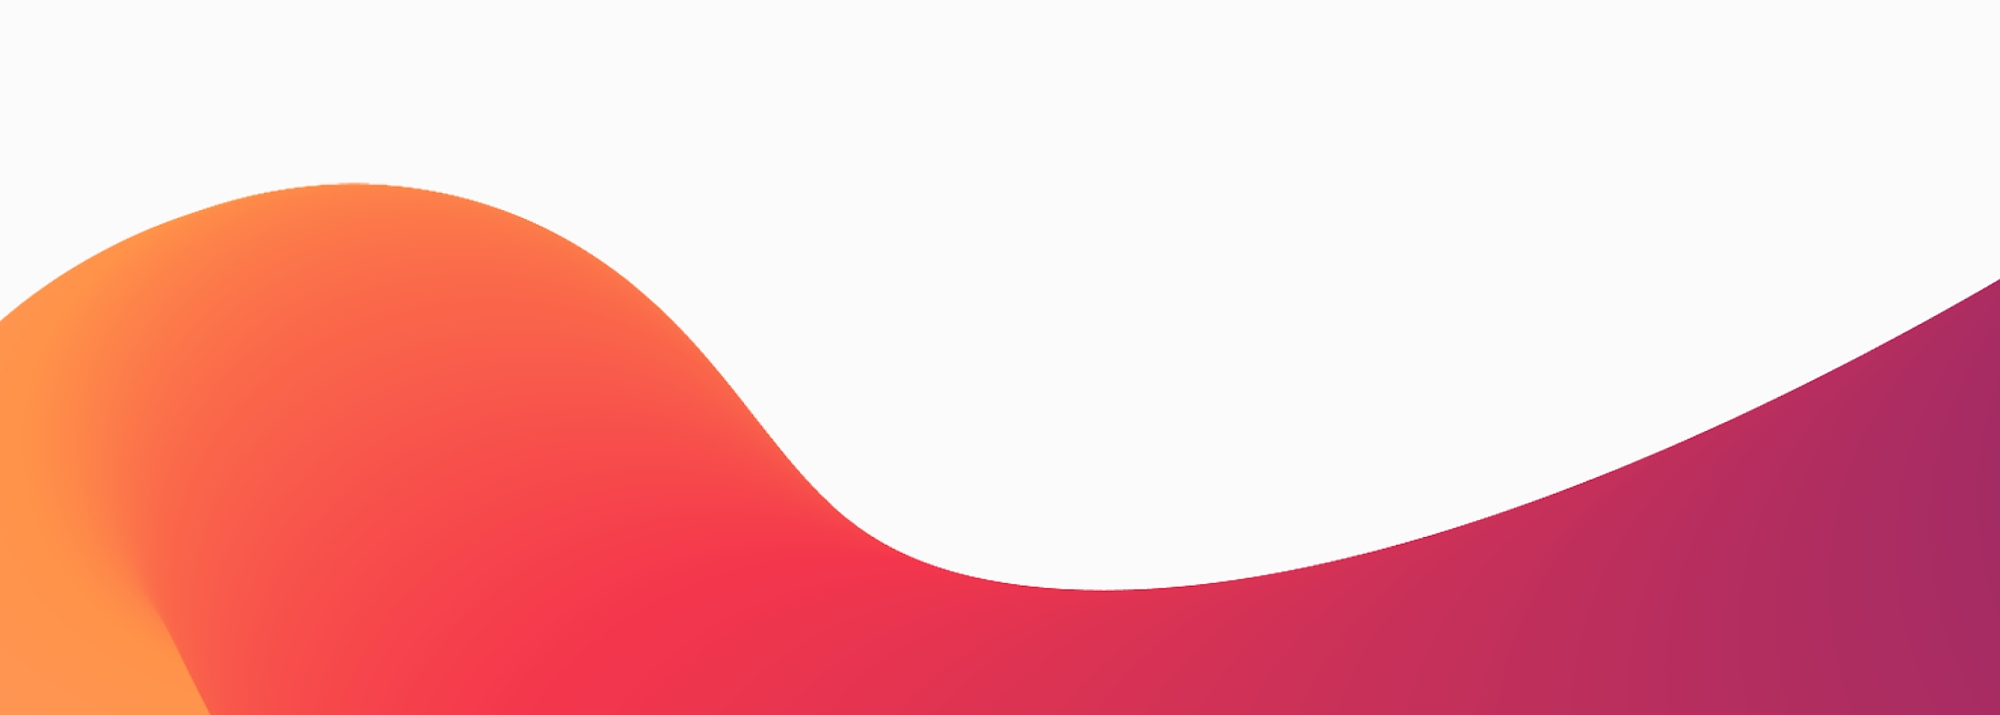 Ein abstraktes Design mit einer glatten Farbverlaufswelle mit Farben, die von Orange zu Rot zu Violett übergehen